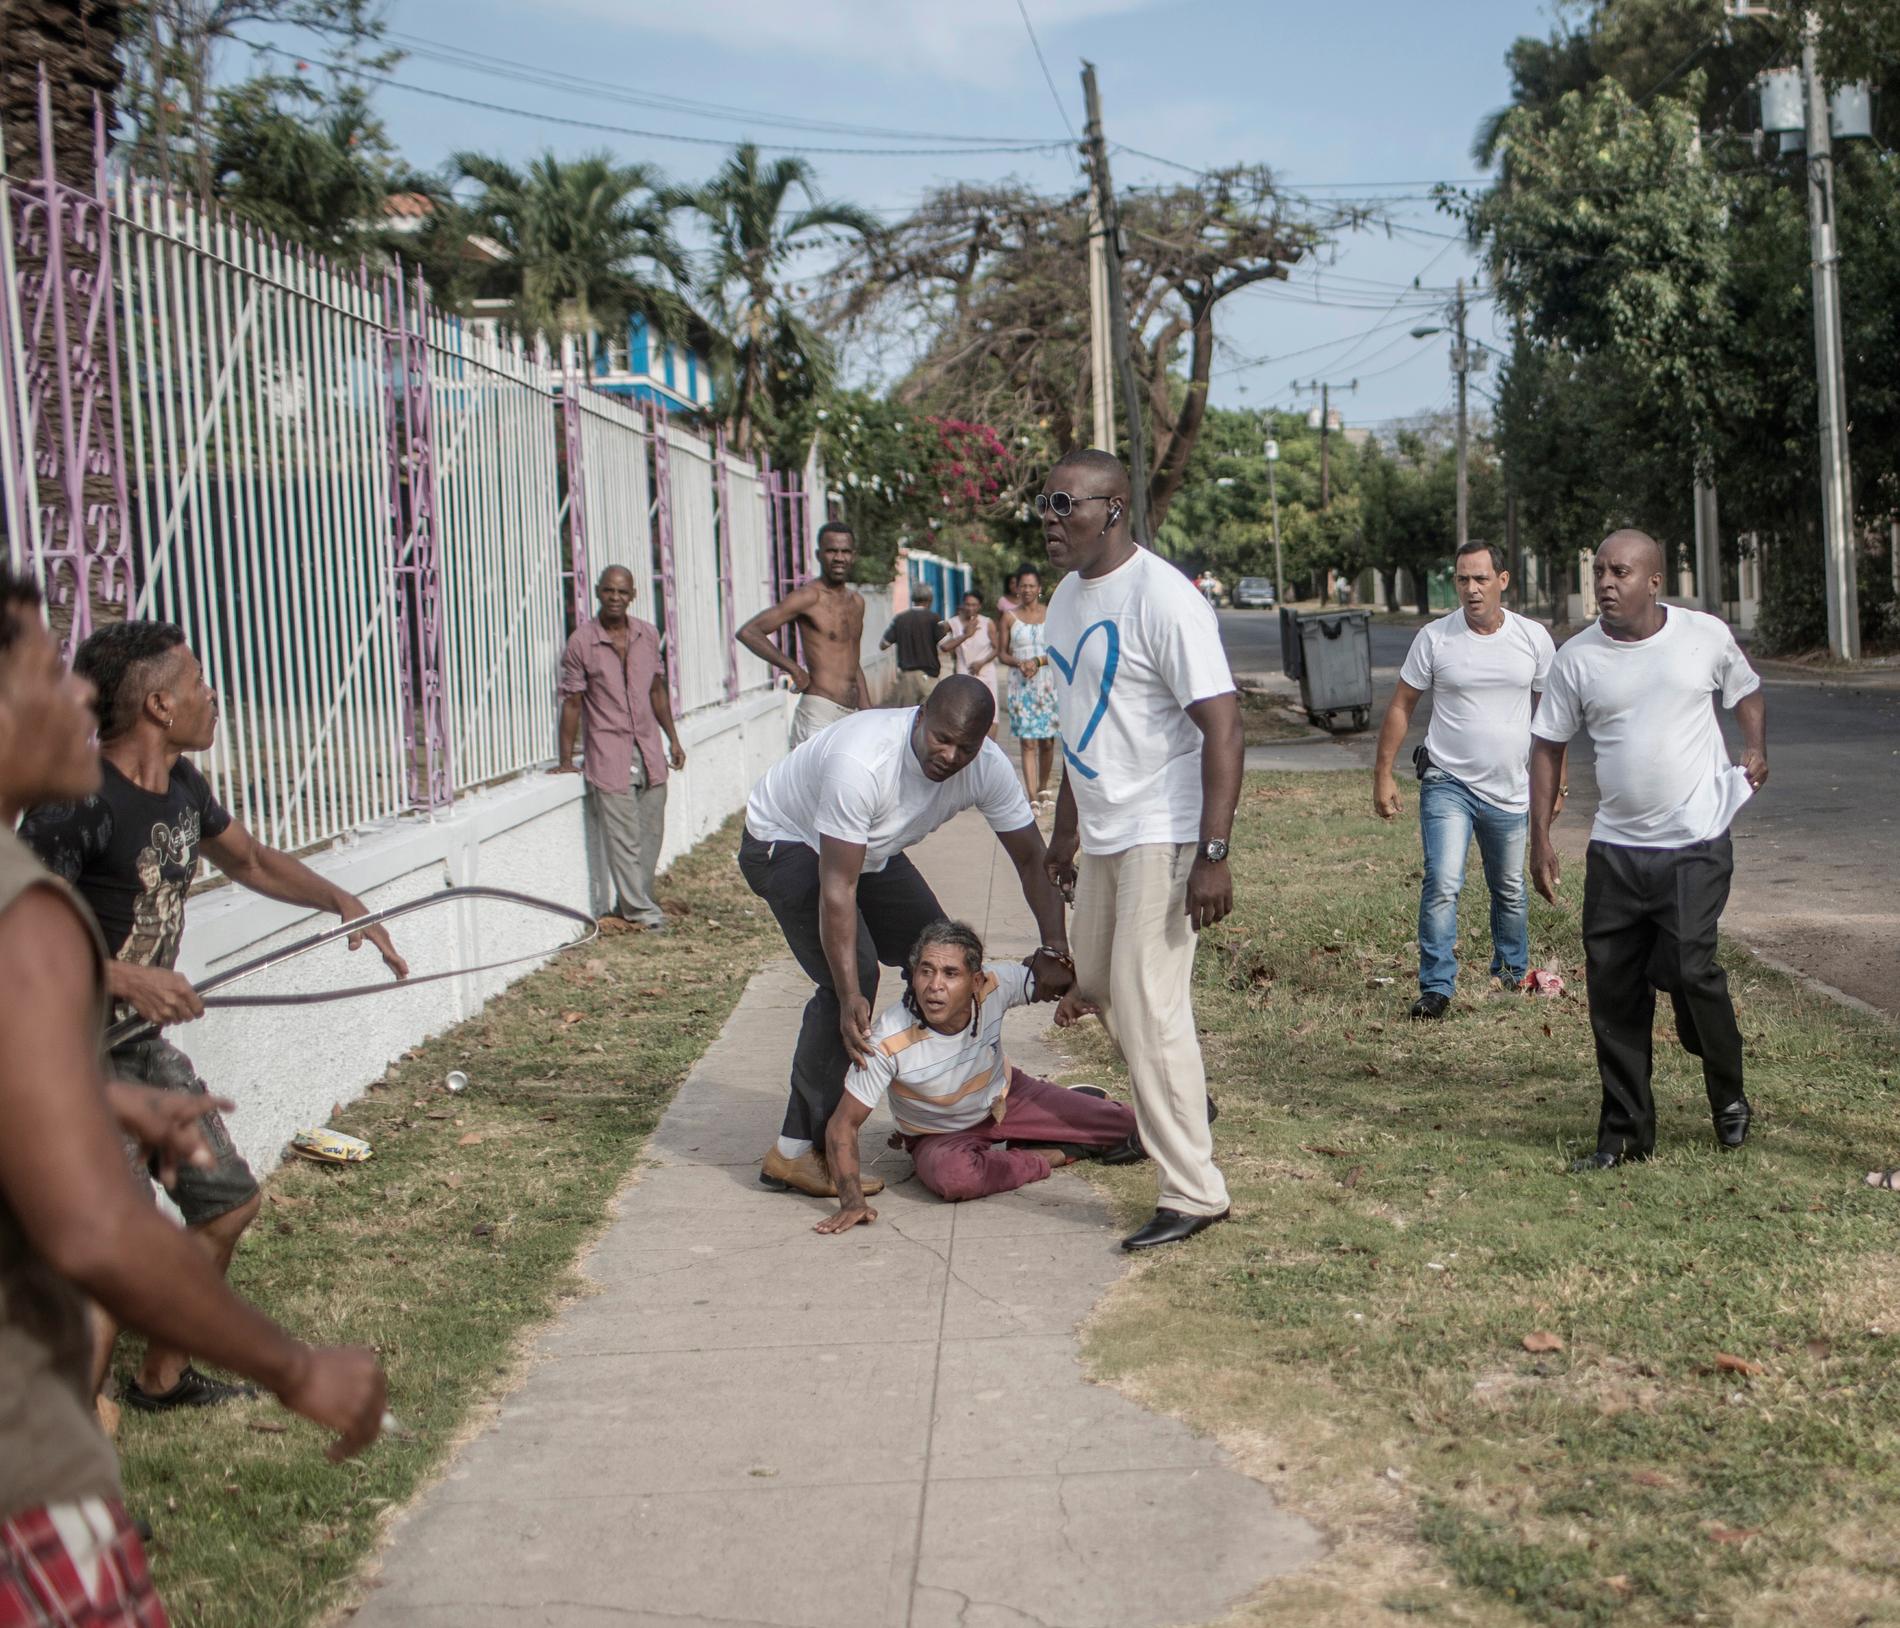 Årets fotograf 2017, Magnus Wennman. Samtidigt som Barack Obama anländer till Kuba slår civilklädda säkerhetspoliser till mot en grupp män som demonstrerar på gatan. Blixtsnabbt förs en av demonstranterna in i en väntande bil och körs iväg.